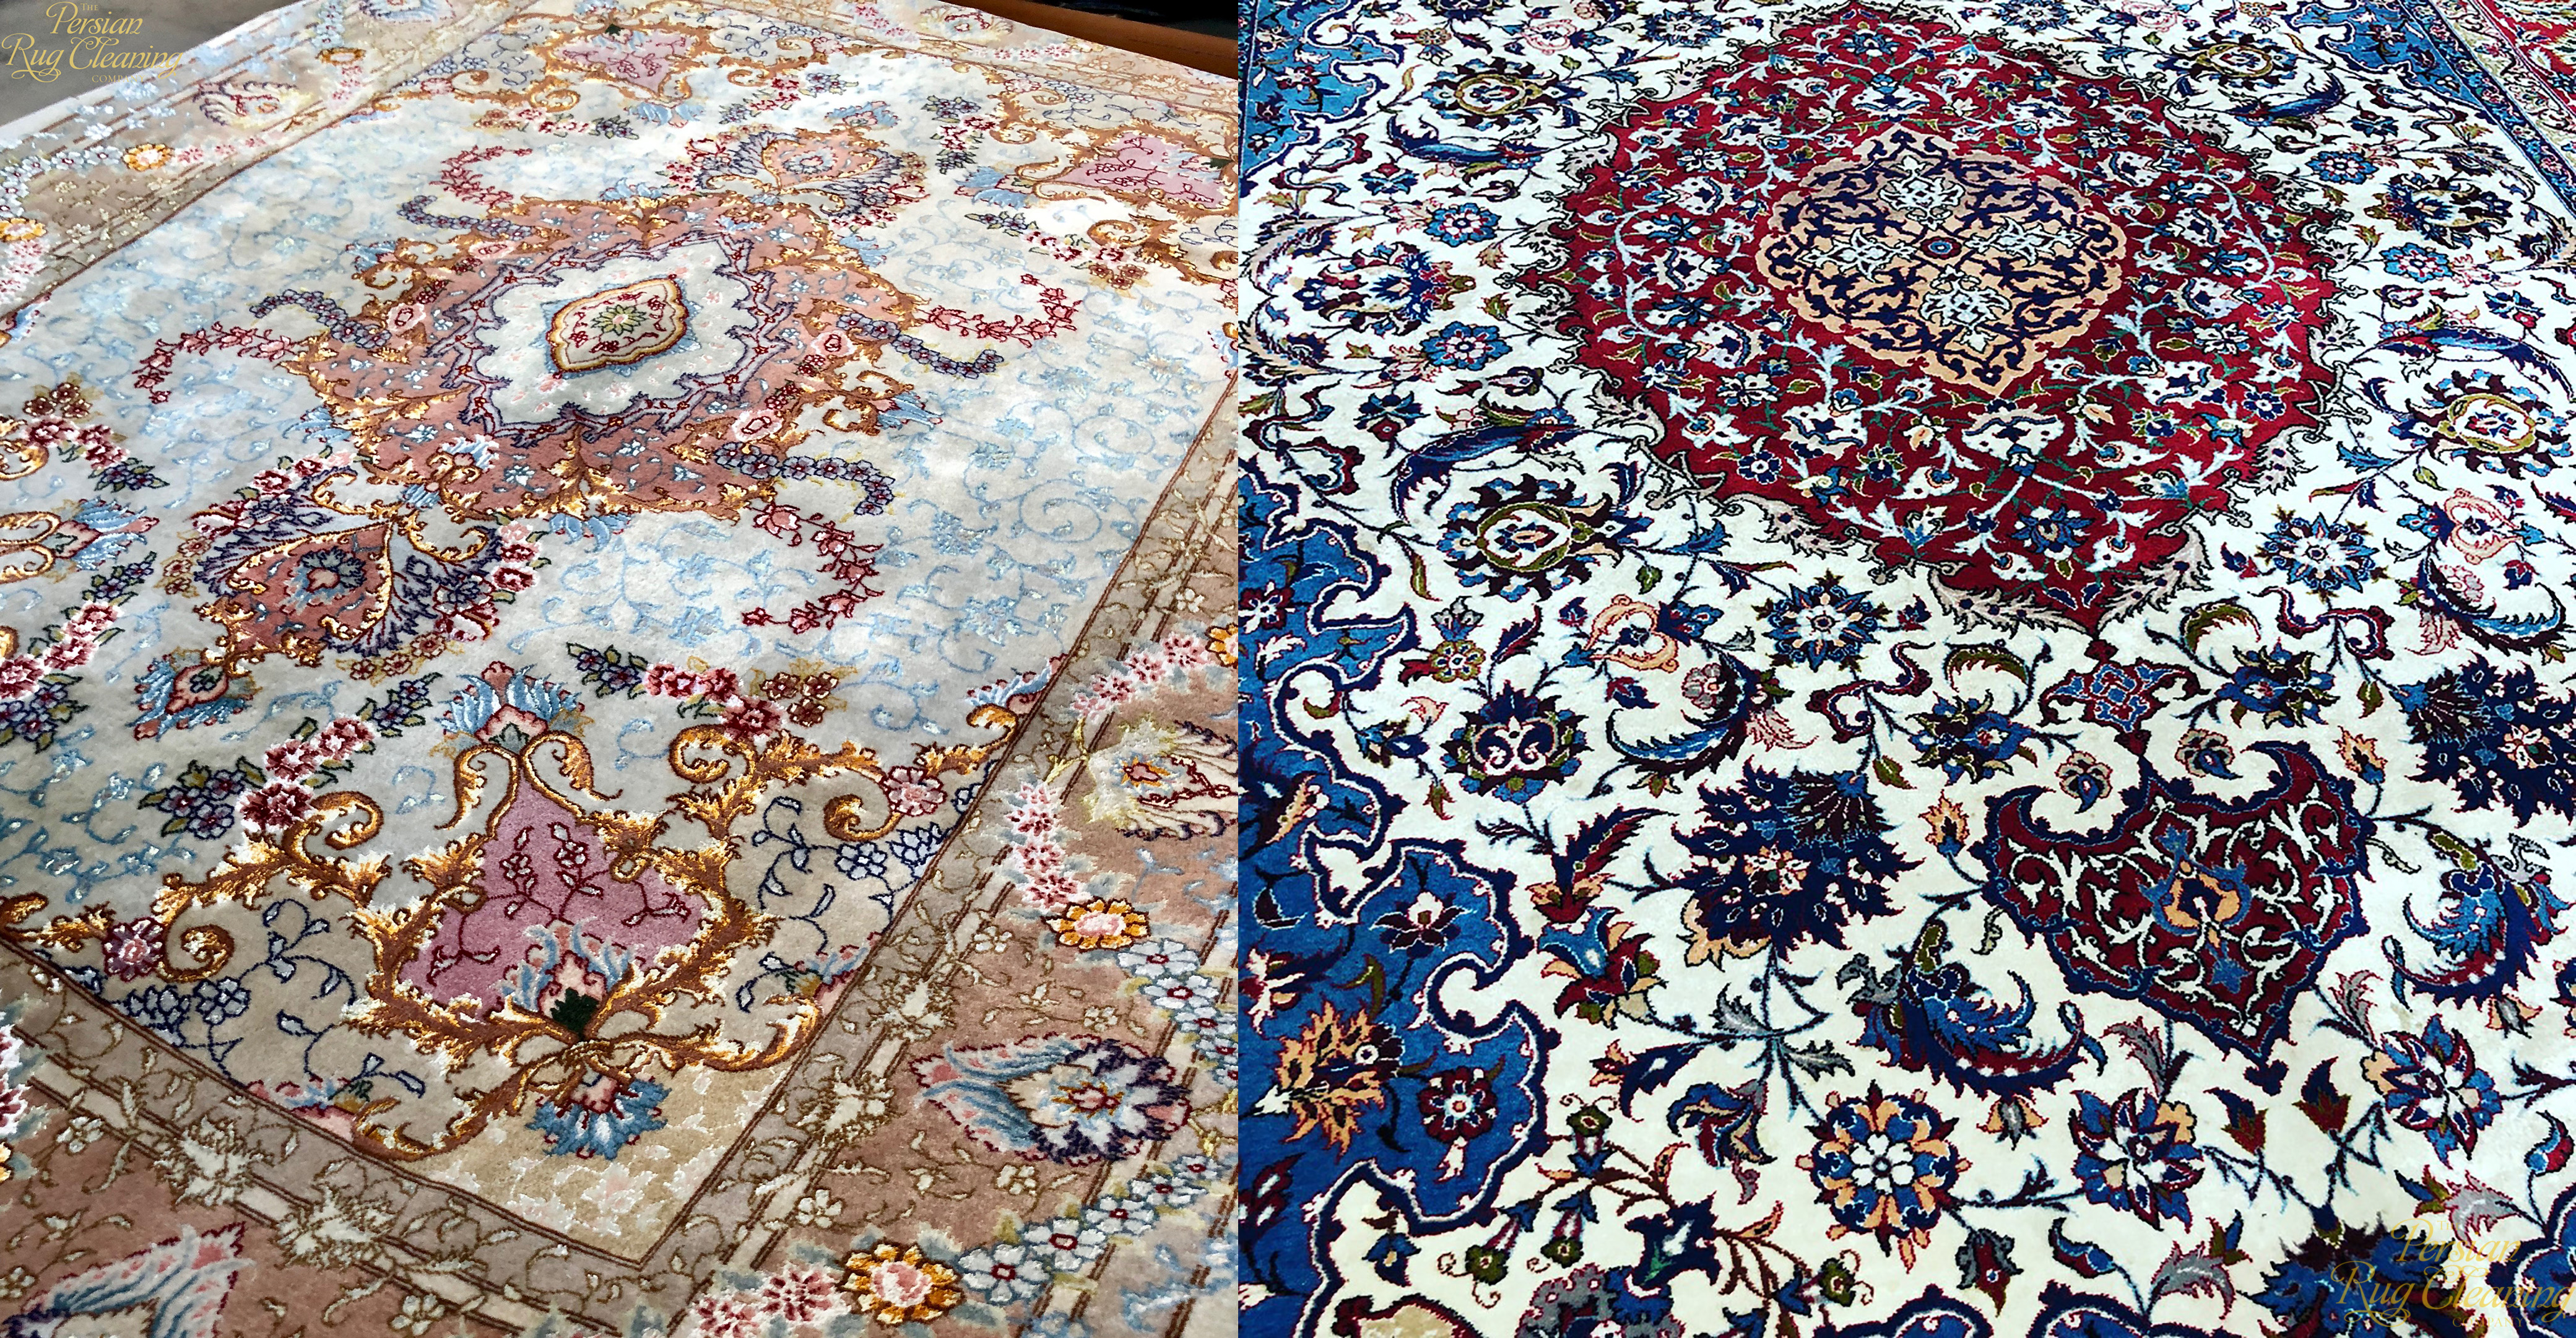 rug cleaning myths - Tabriz and Isfahan